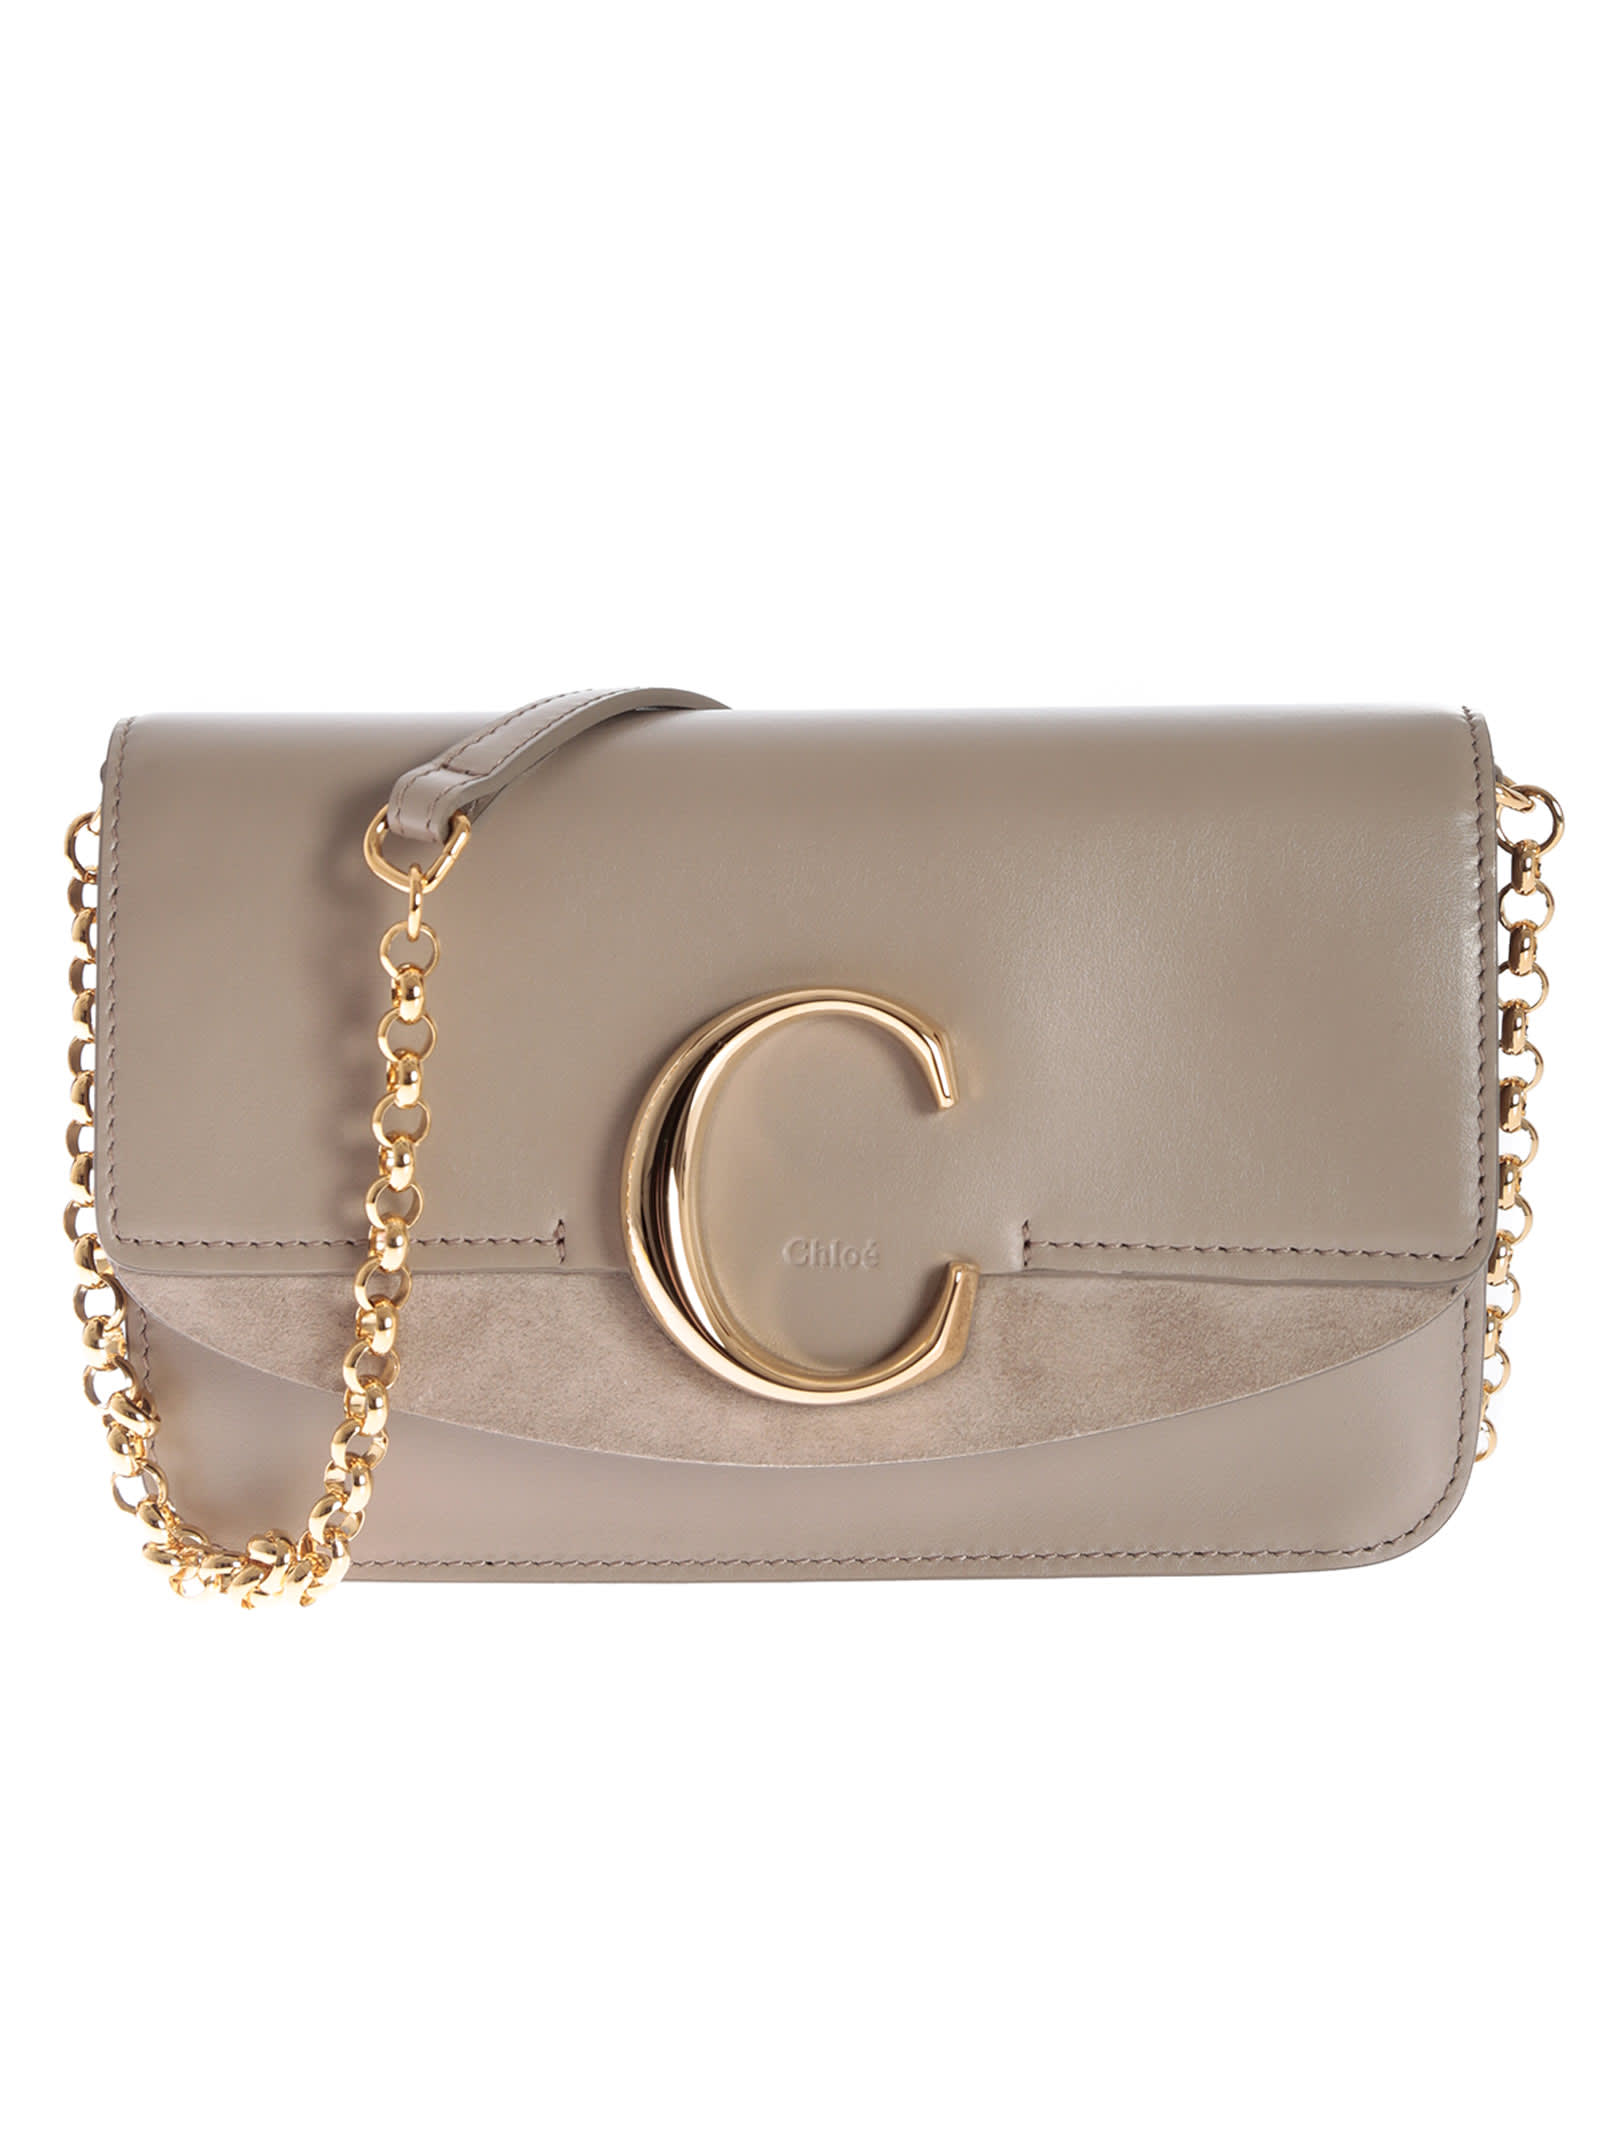 Chloé Logo Shoulder Bag | ModeSens